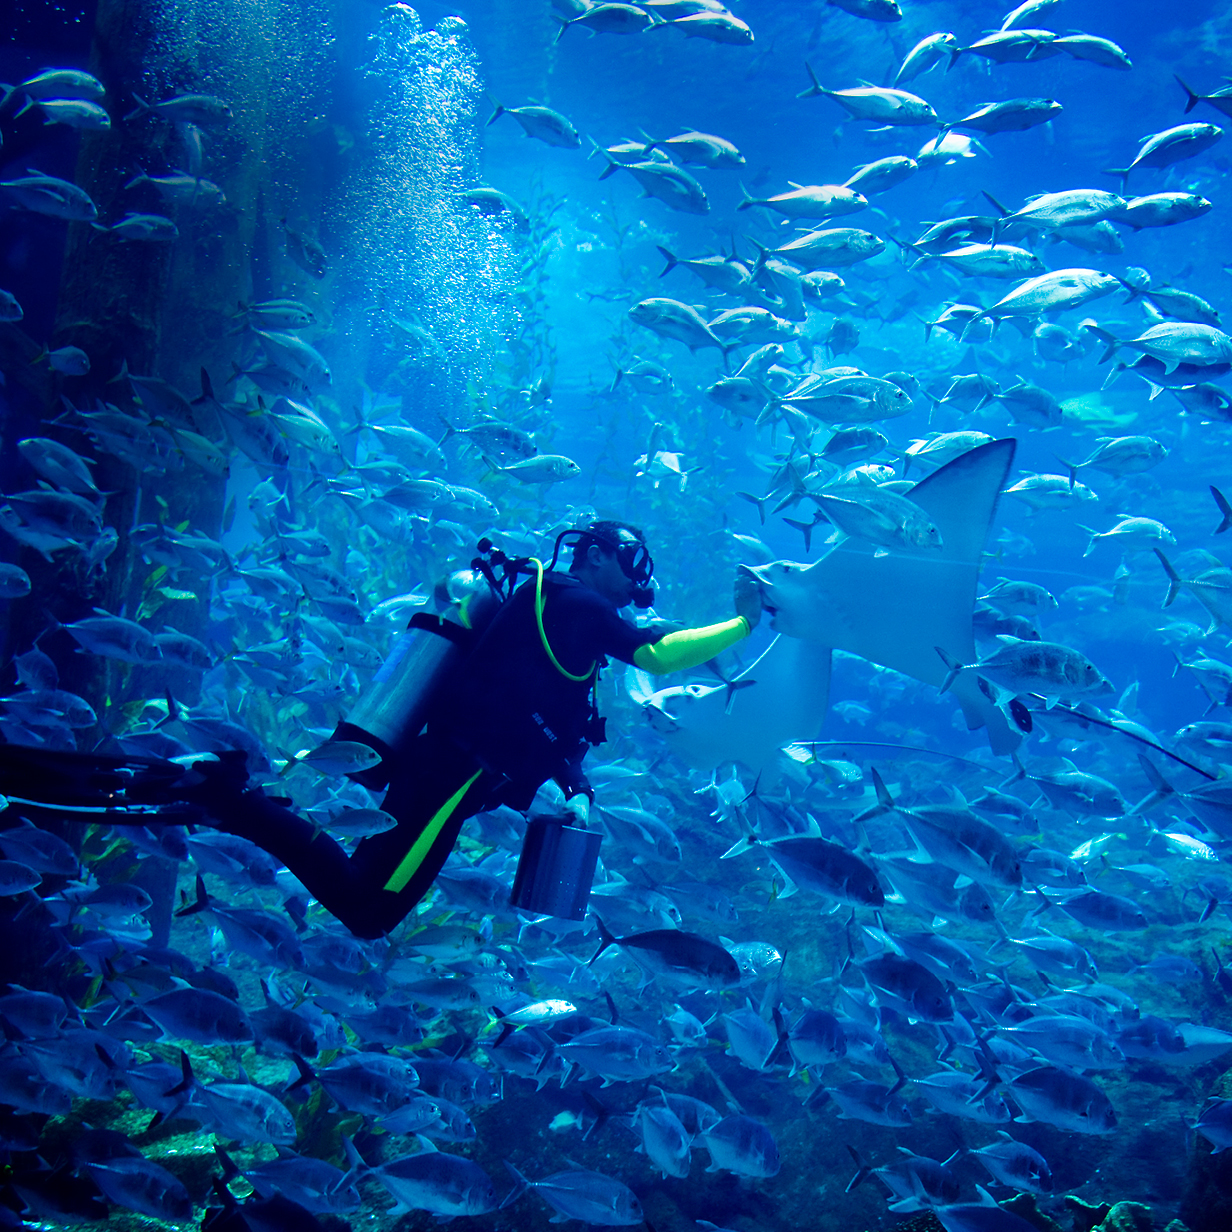 Dubai Mall Aquarium and Underwater Zoo, , large